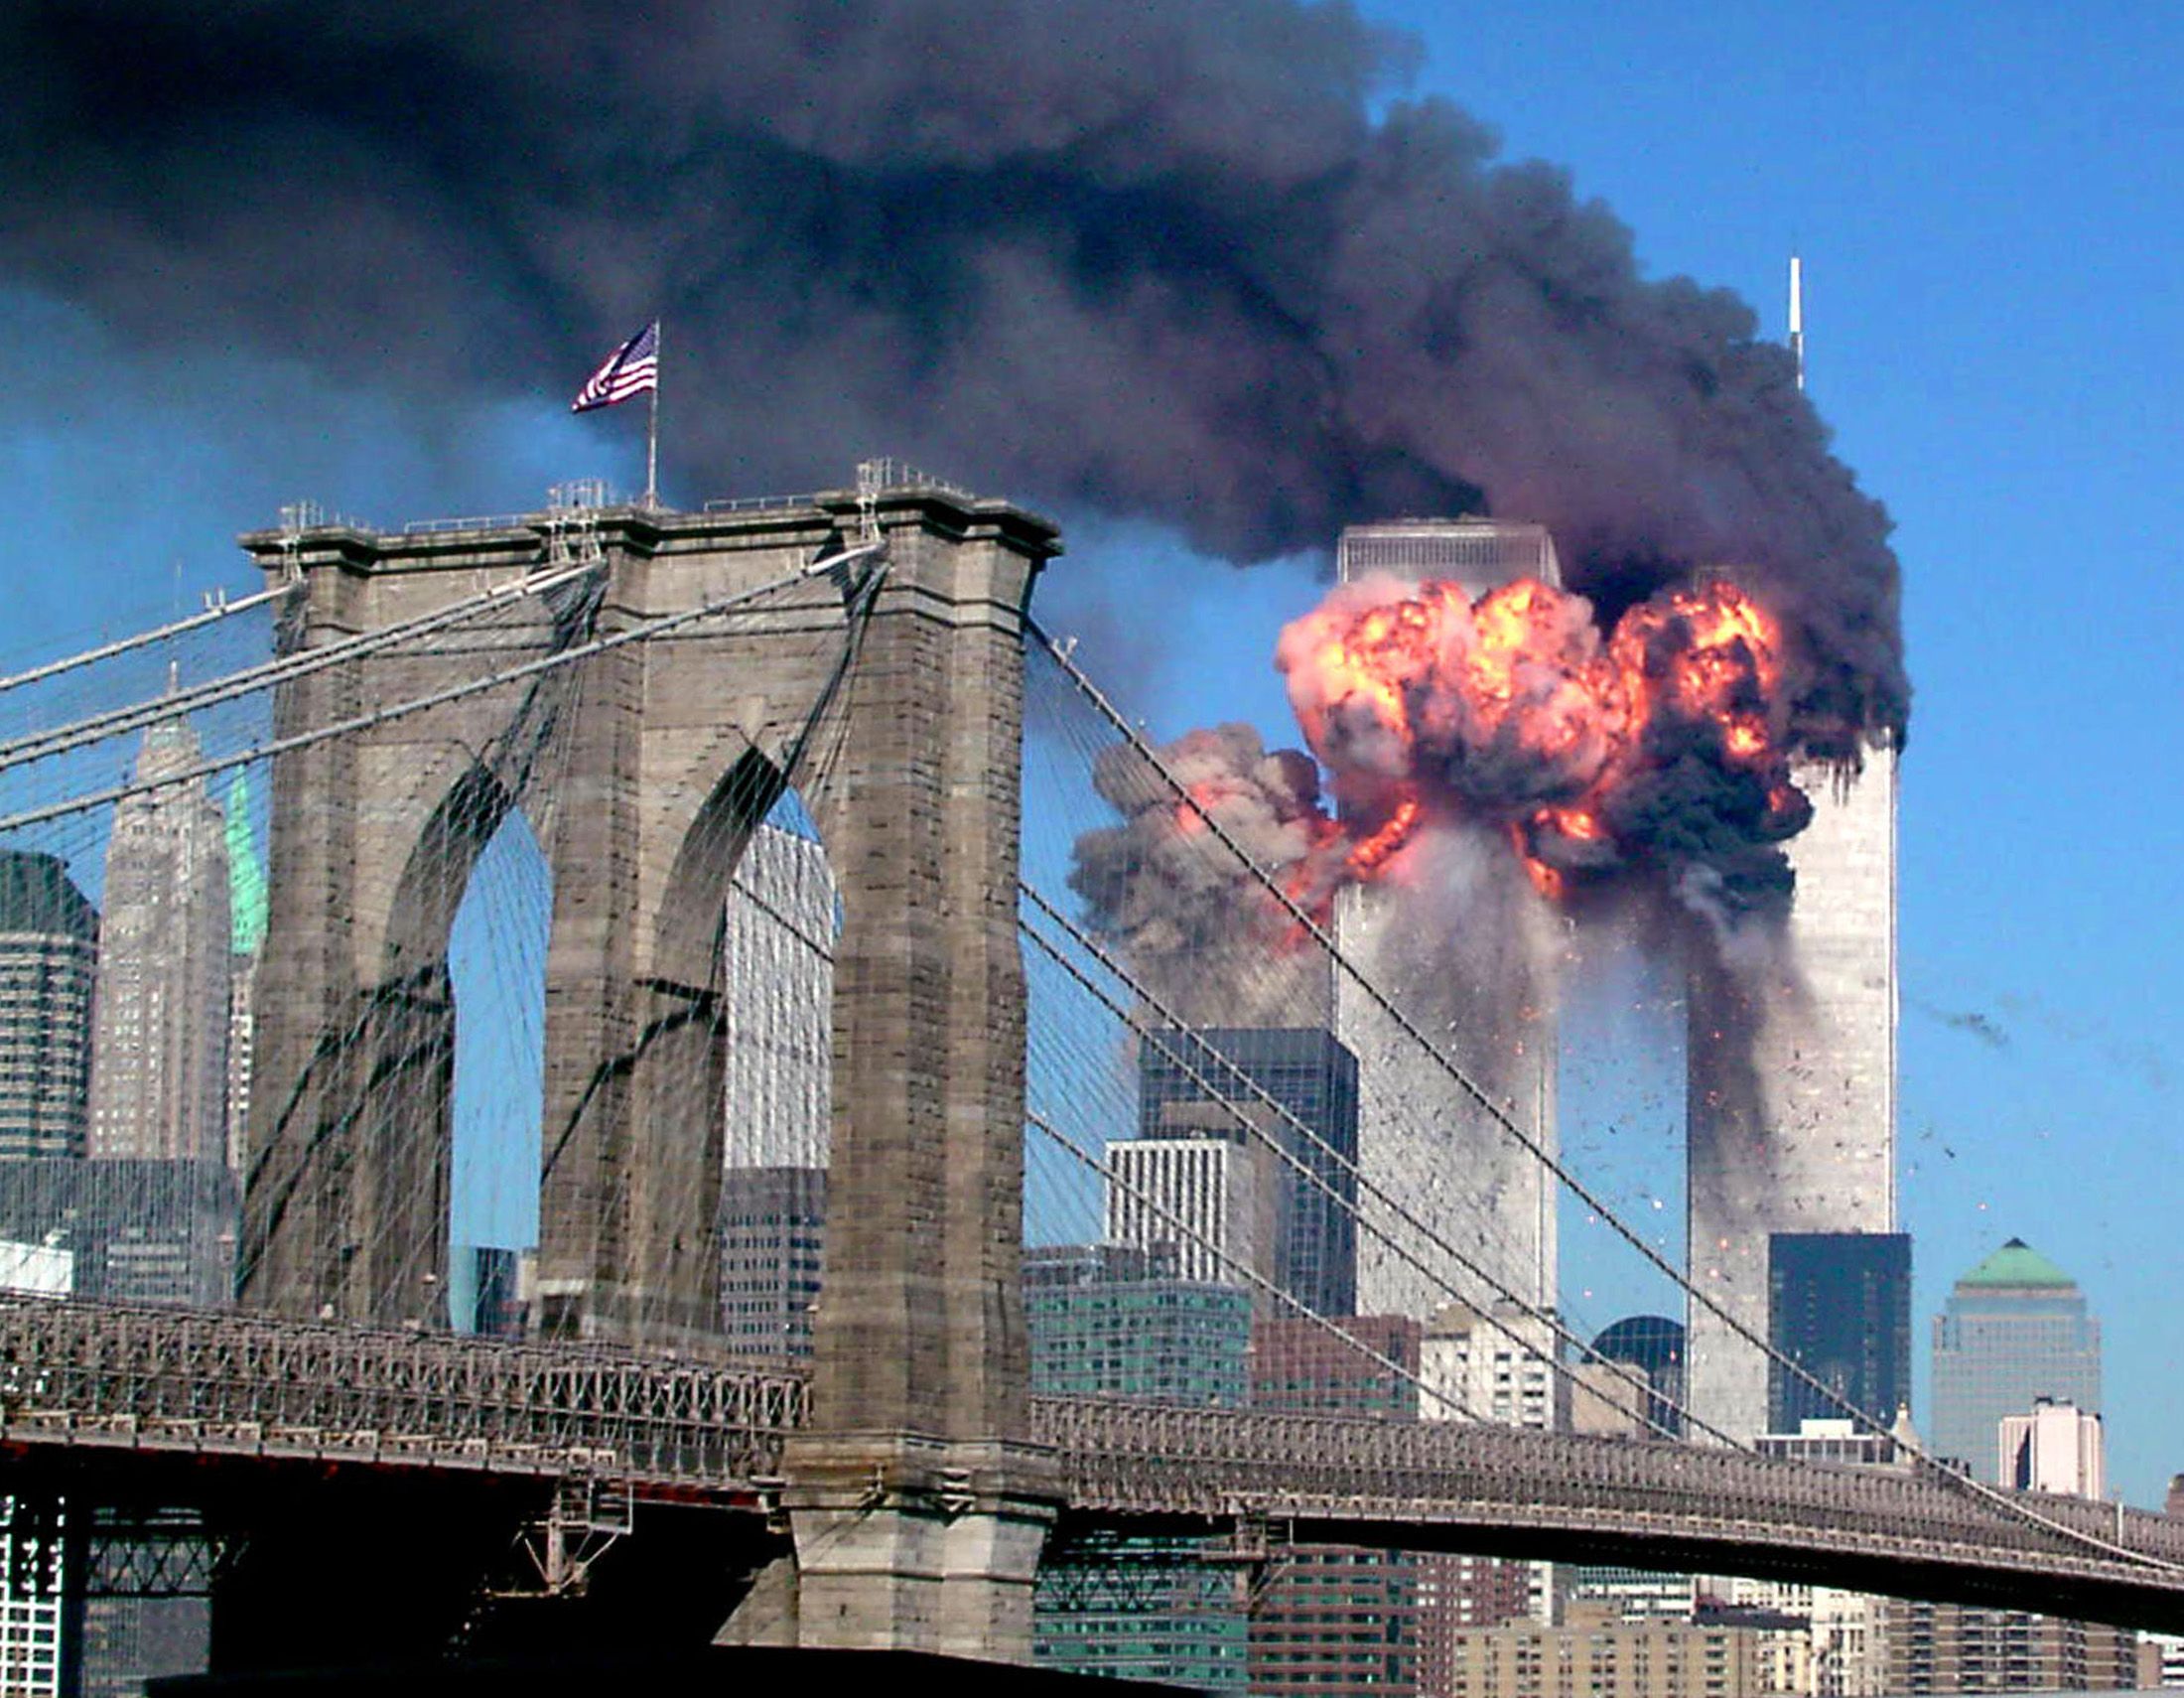 9 августа 2001. Теракт 11 сентября 2001 года башни Близнецы. США 11.09.2001 Нью-Йорк, башни-Близнецы.